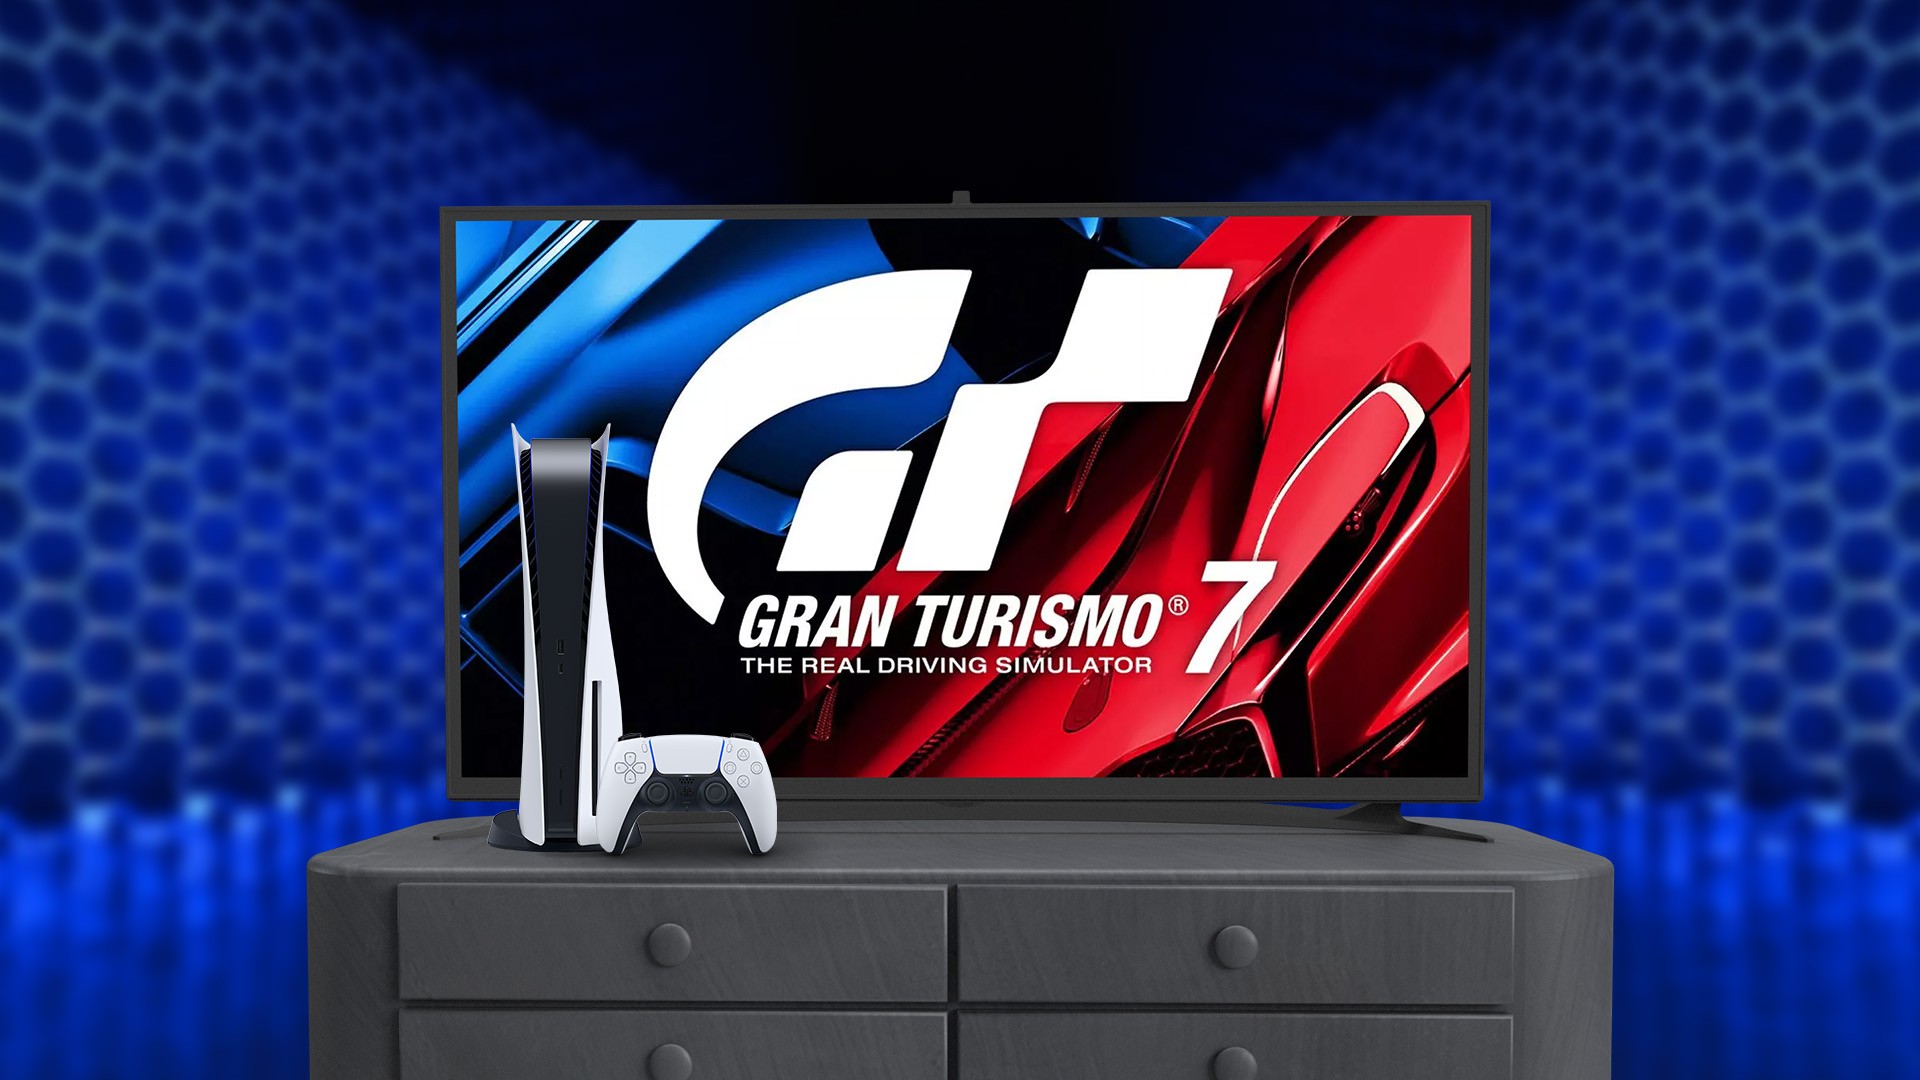 Jogo Gran Turismo 7 Edição Standard Ps5 - PS5